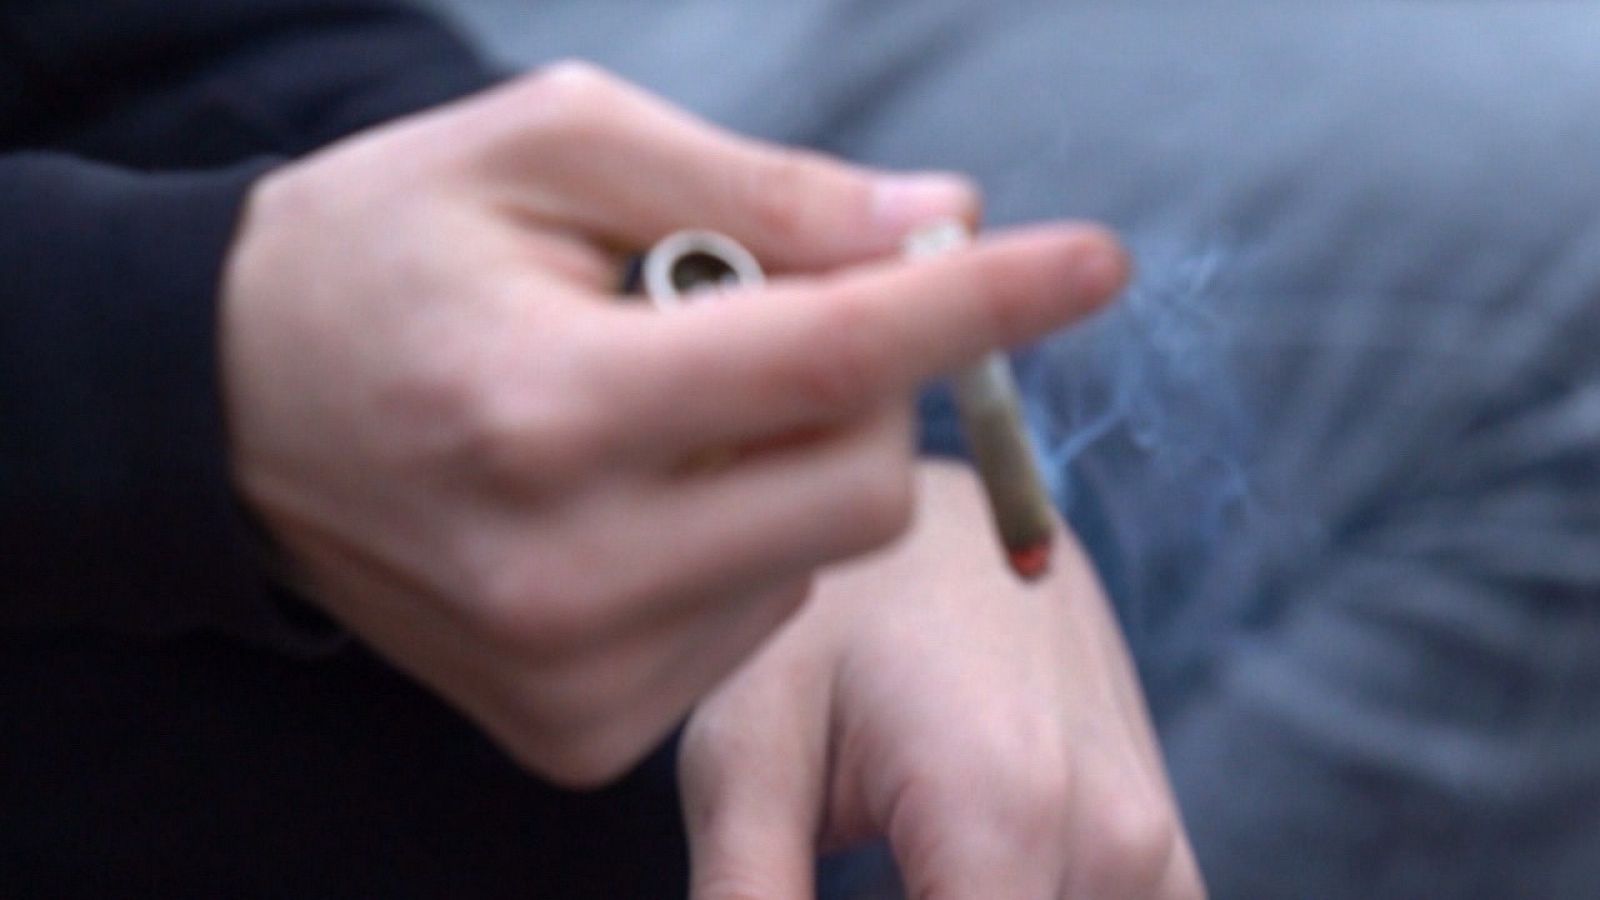 Unas manos preparan un cigarro de marihuana.